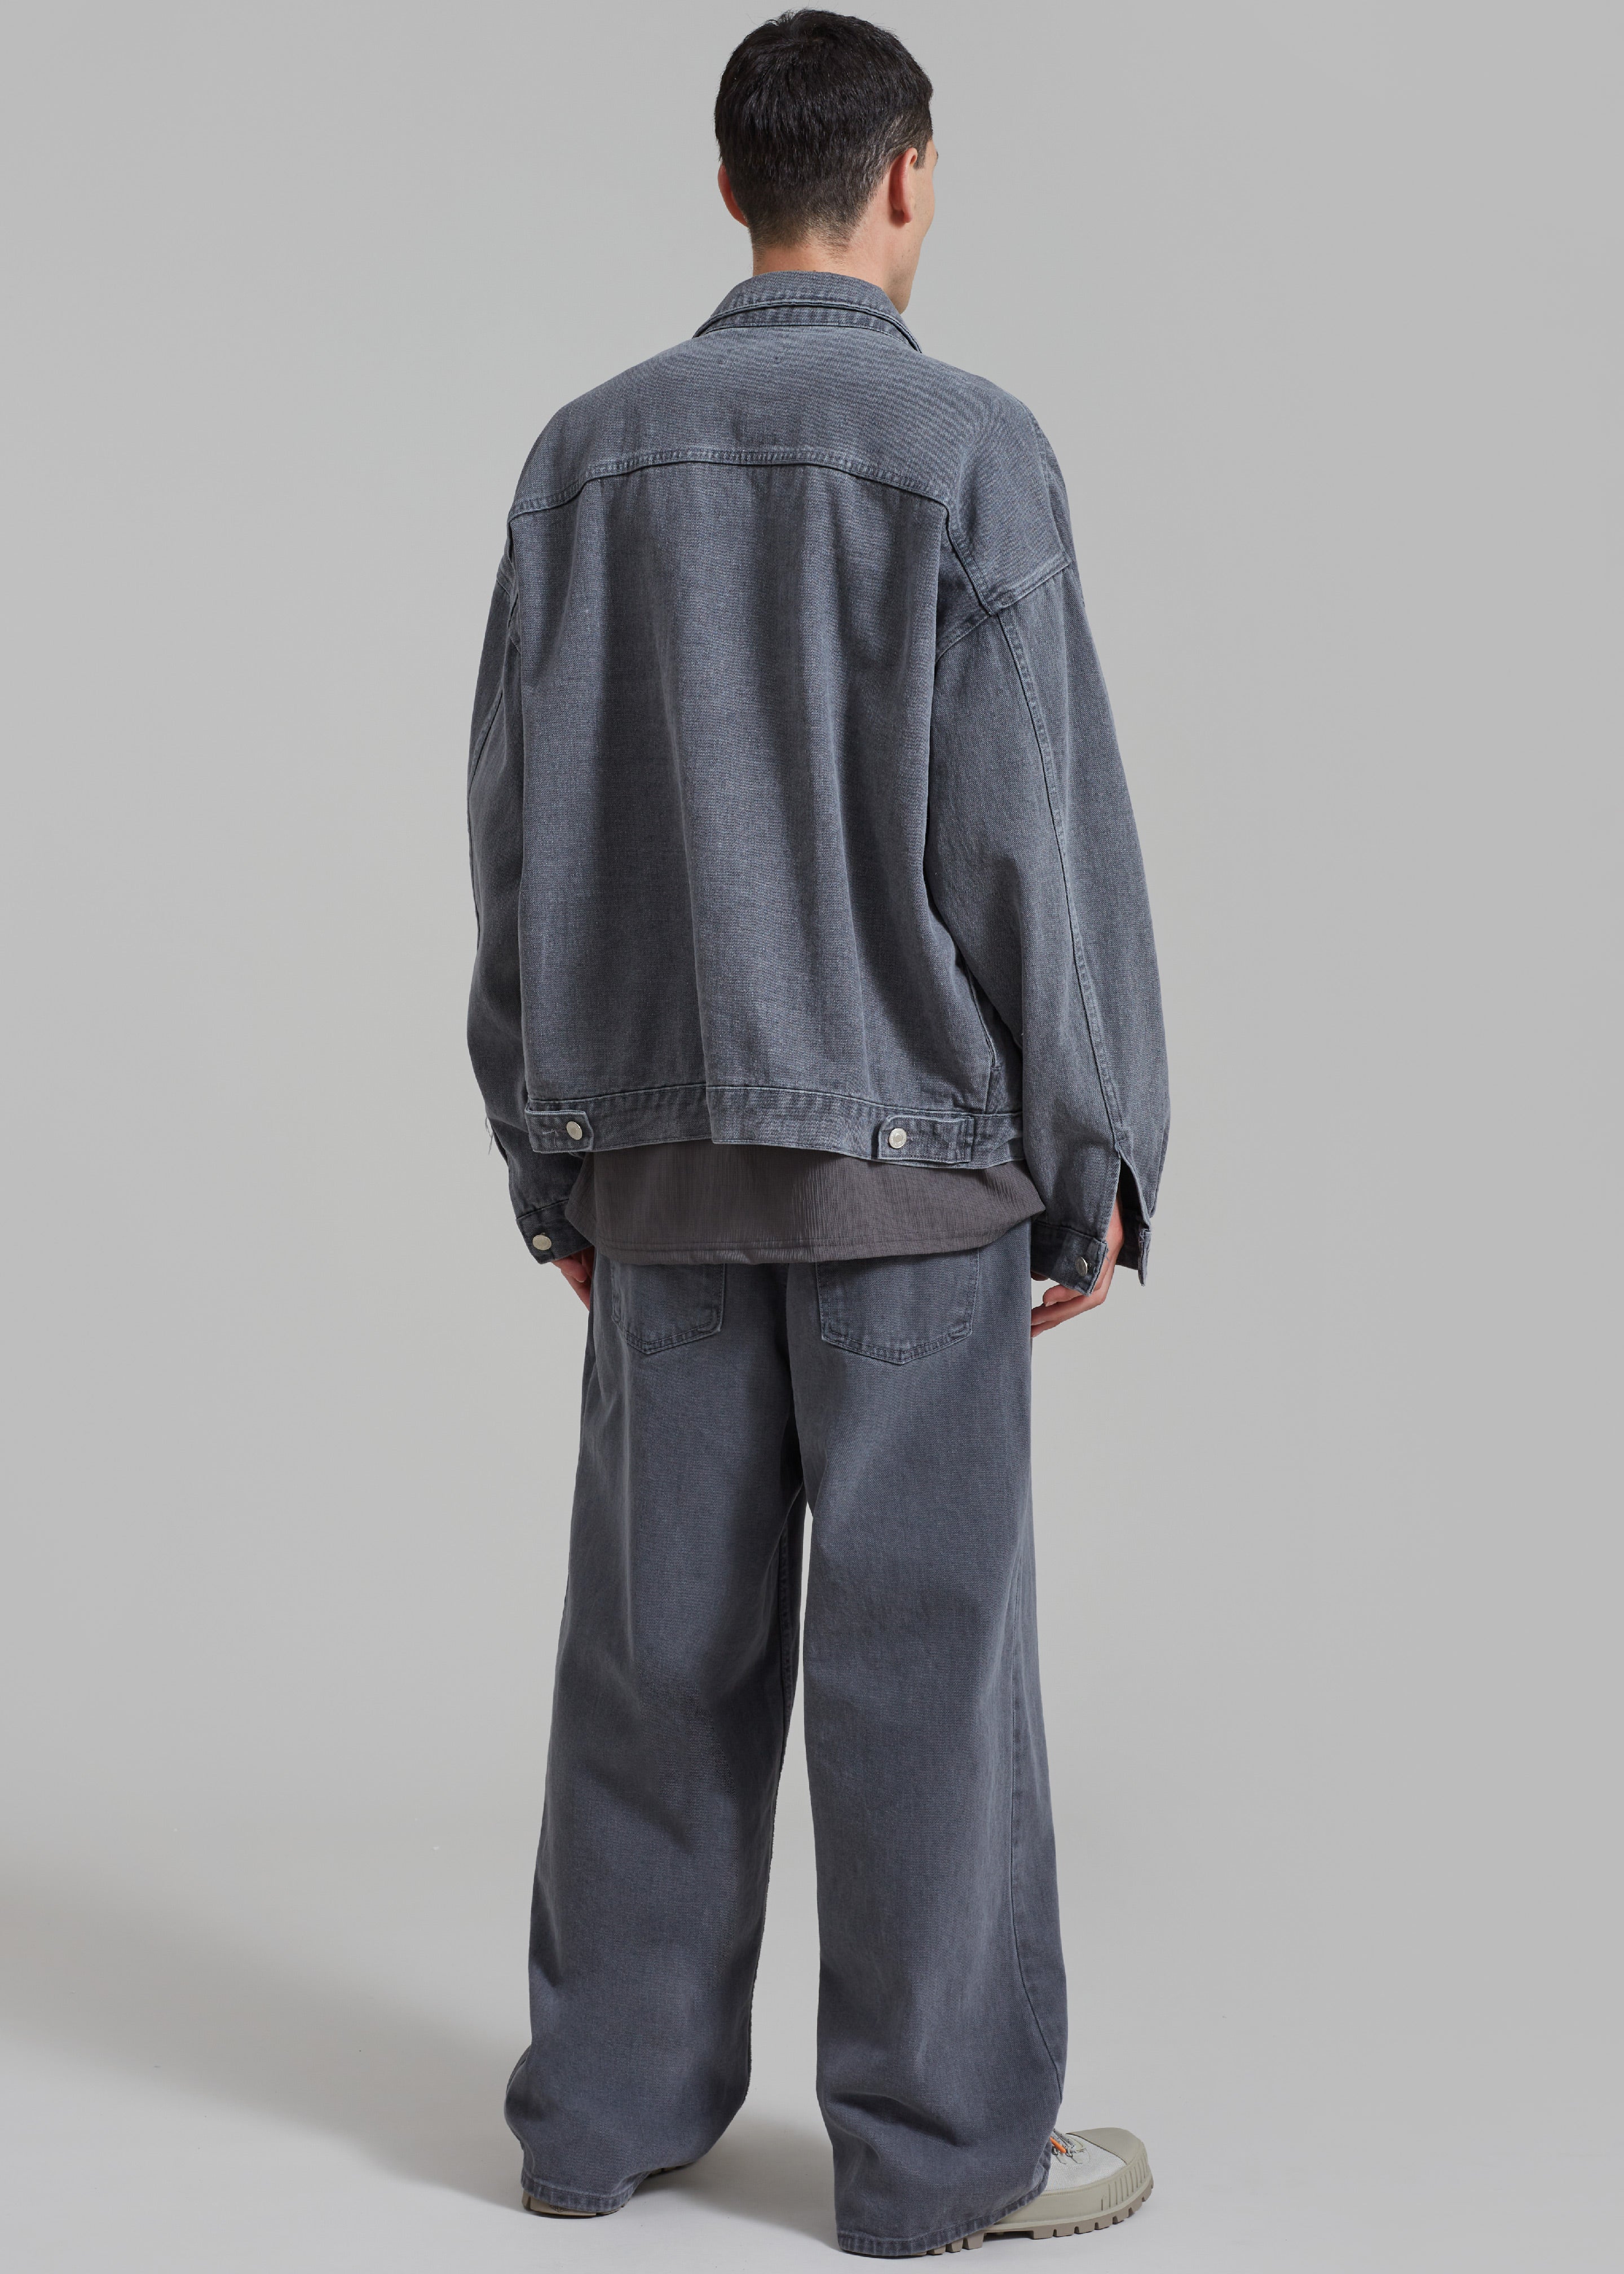 Connor Oversized Denim Jacket - Grey Wash - 6